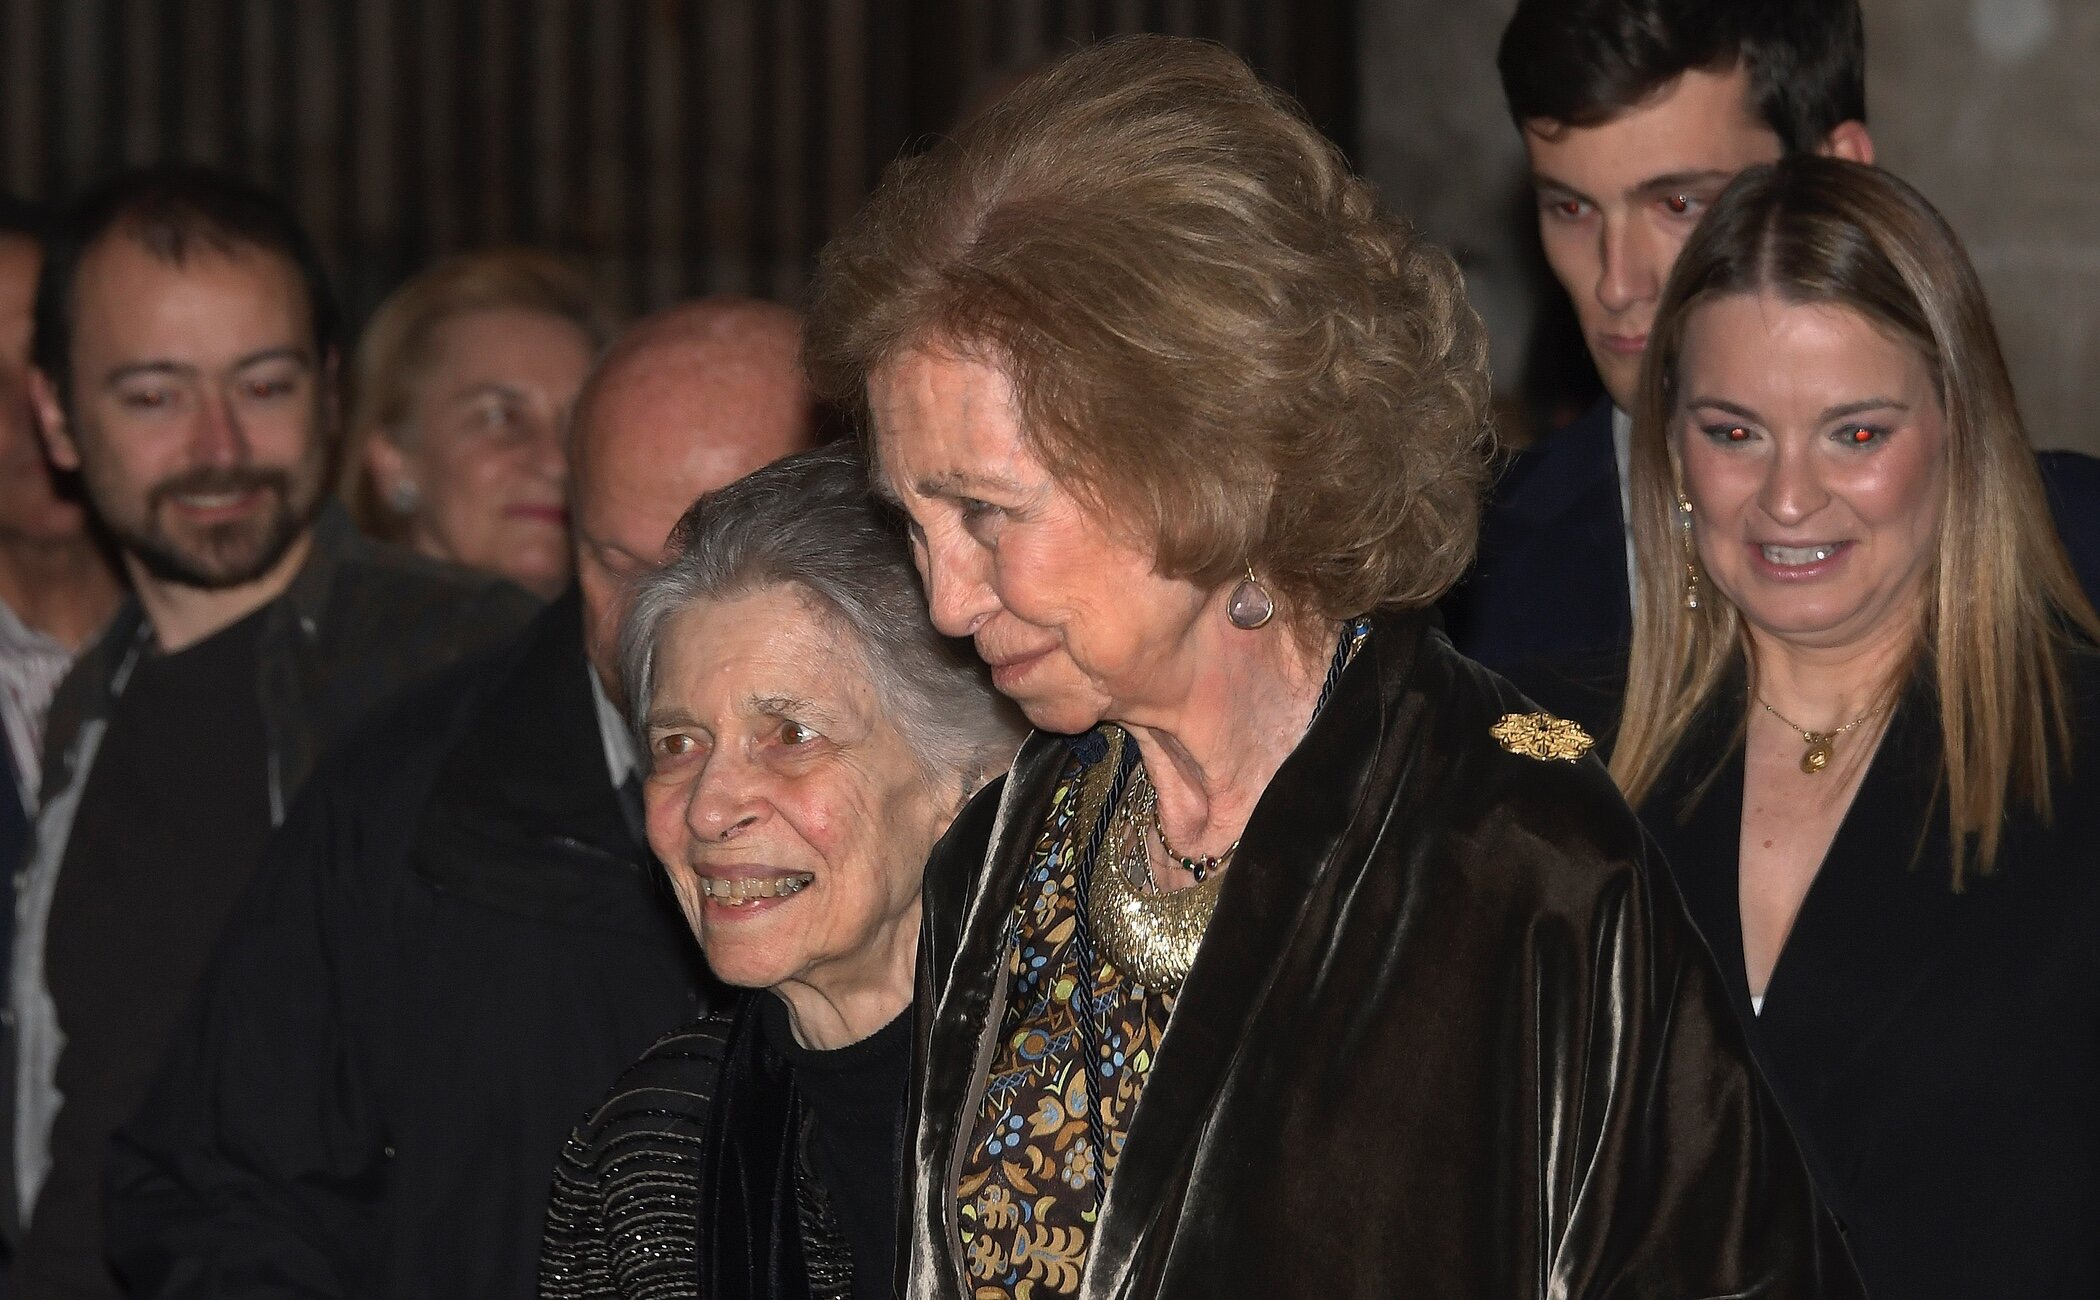 La Reina Sofía acude al concierto benéfico en Mallorca junto a su hermana, la Princesa Irene de Grecia